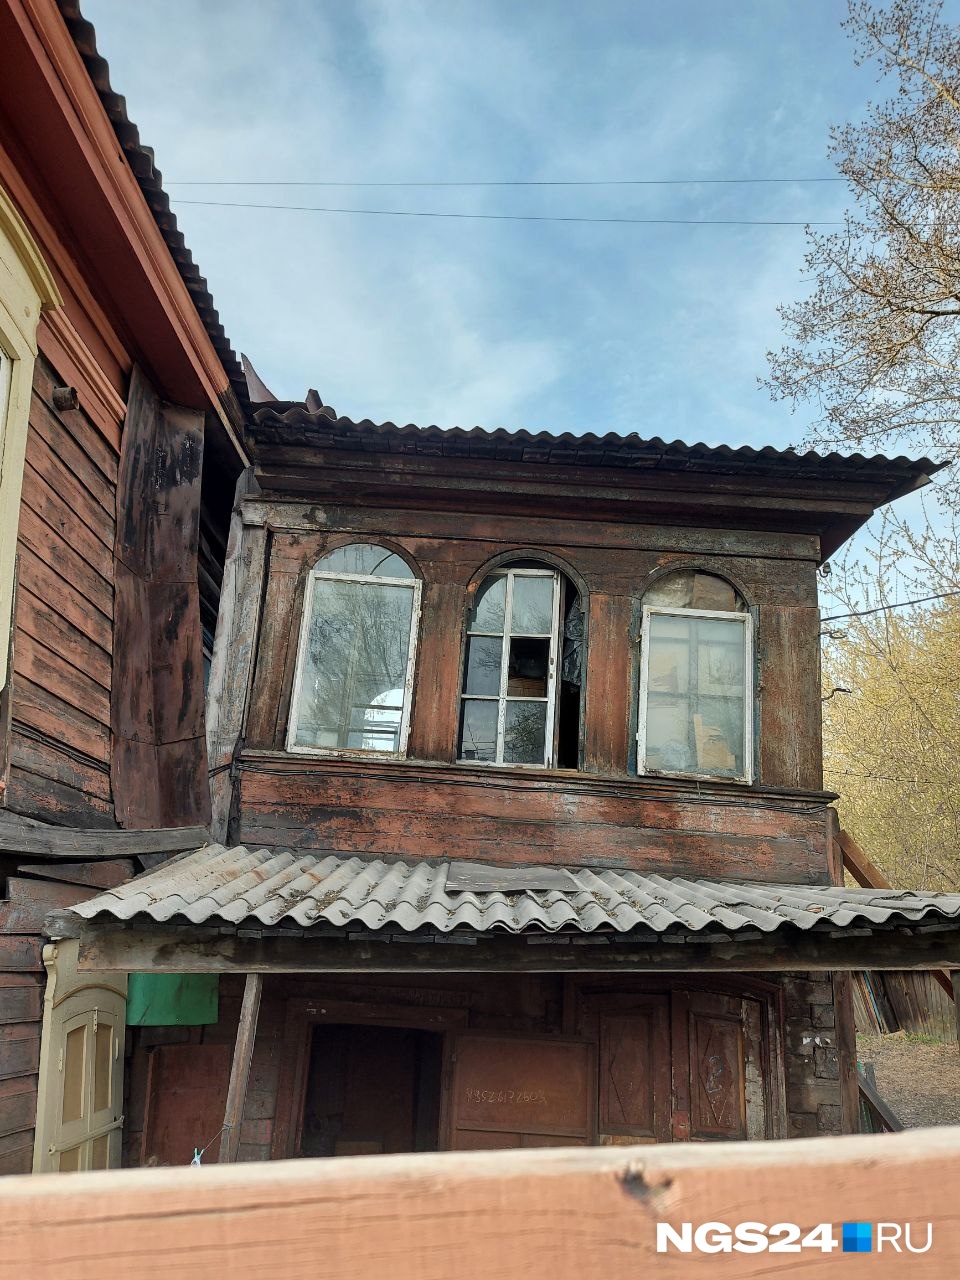 Таких горниц в деревянных домах Иркутска очень много